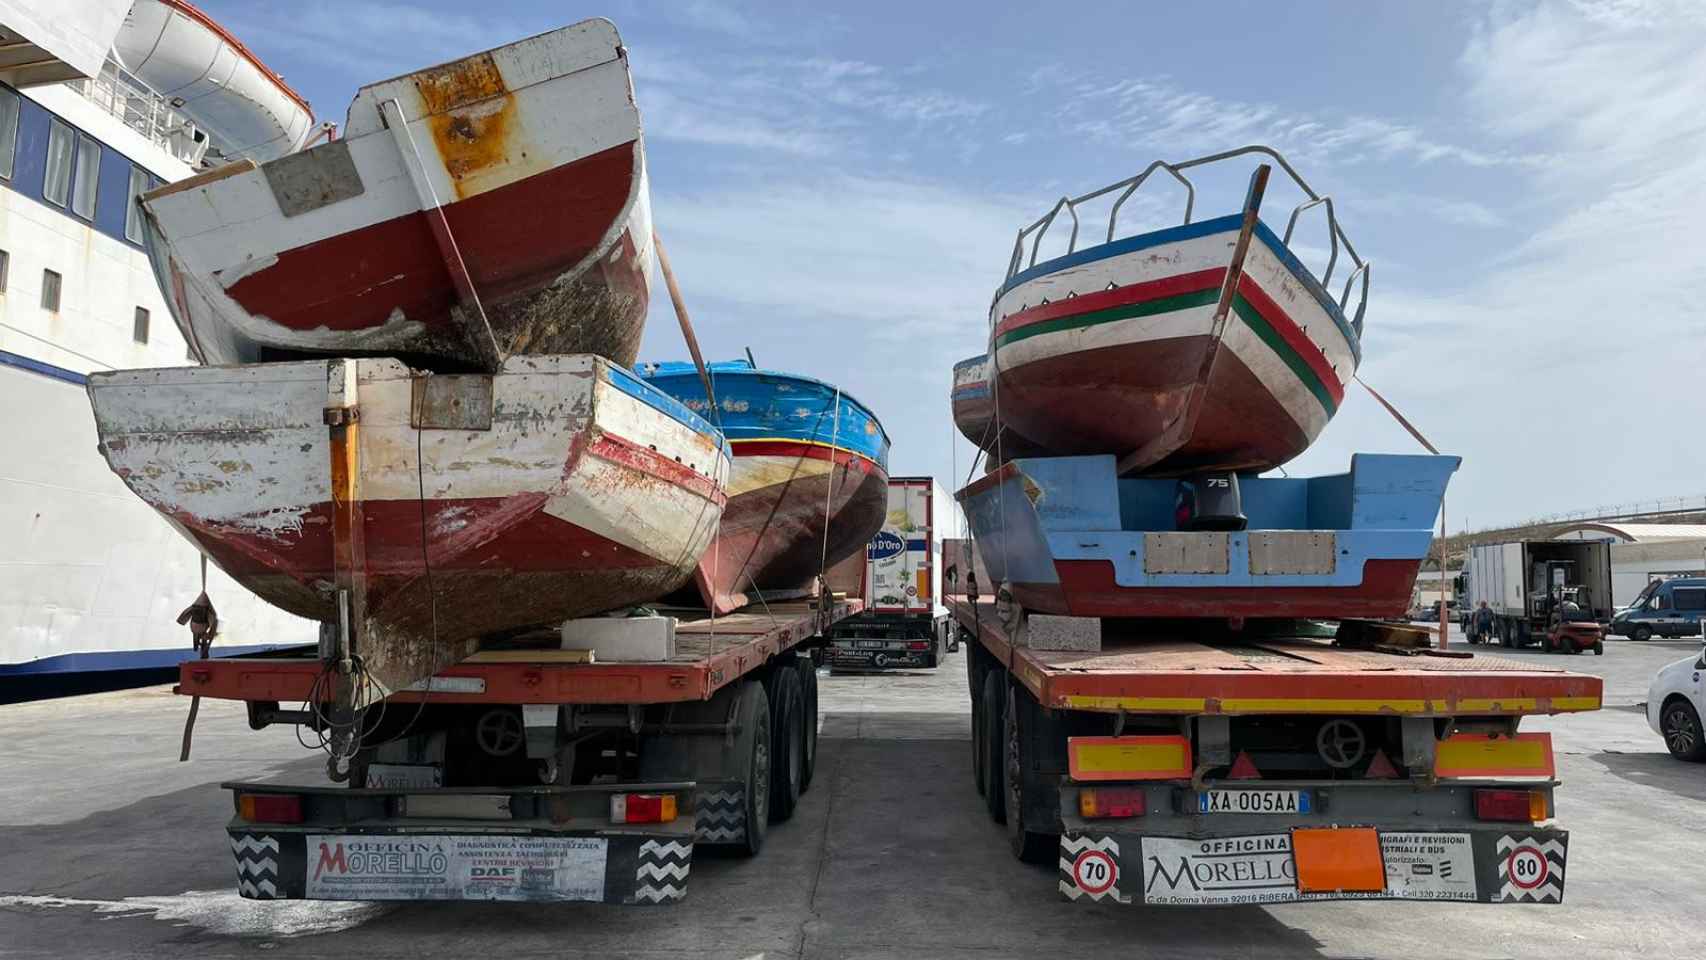 Camiones cargan en los ferries las barcas con las que han llegado los migrantes a Lampedusa.